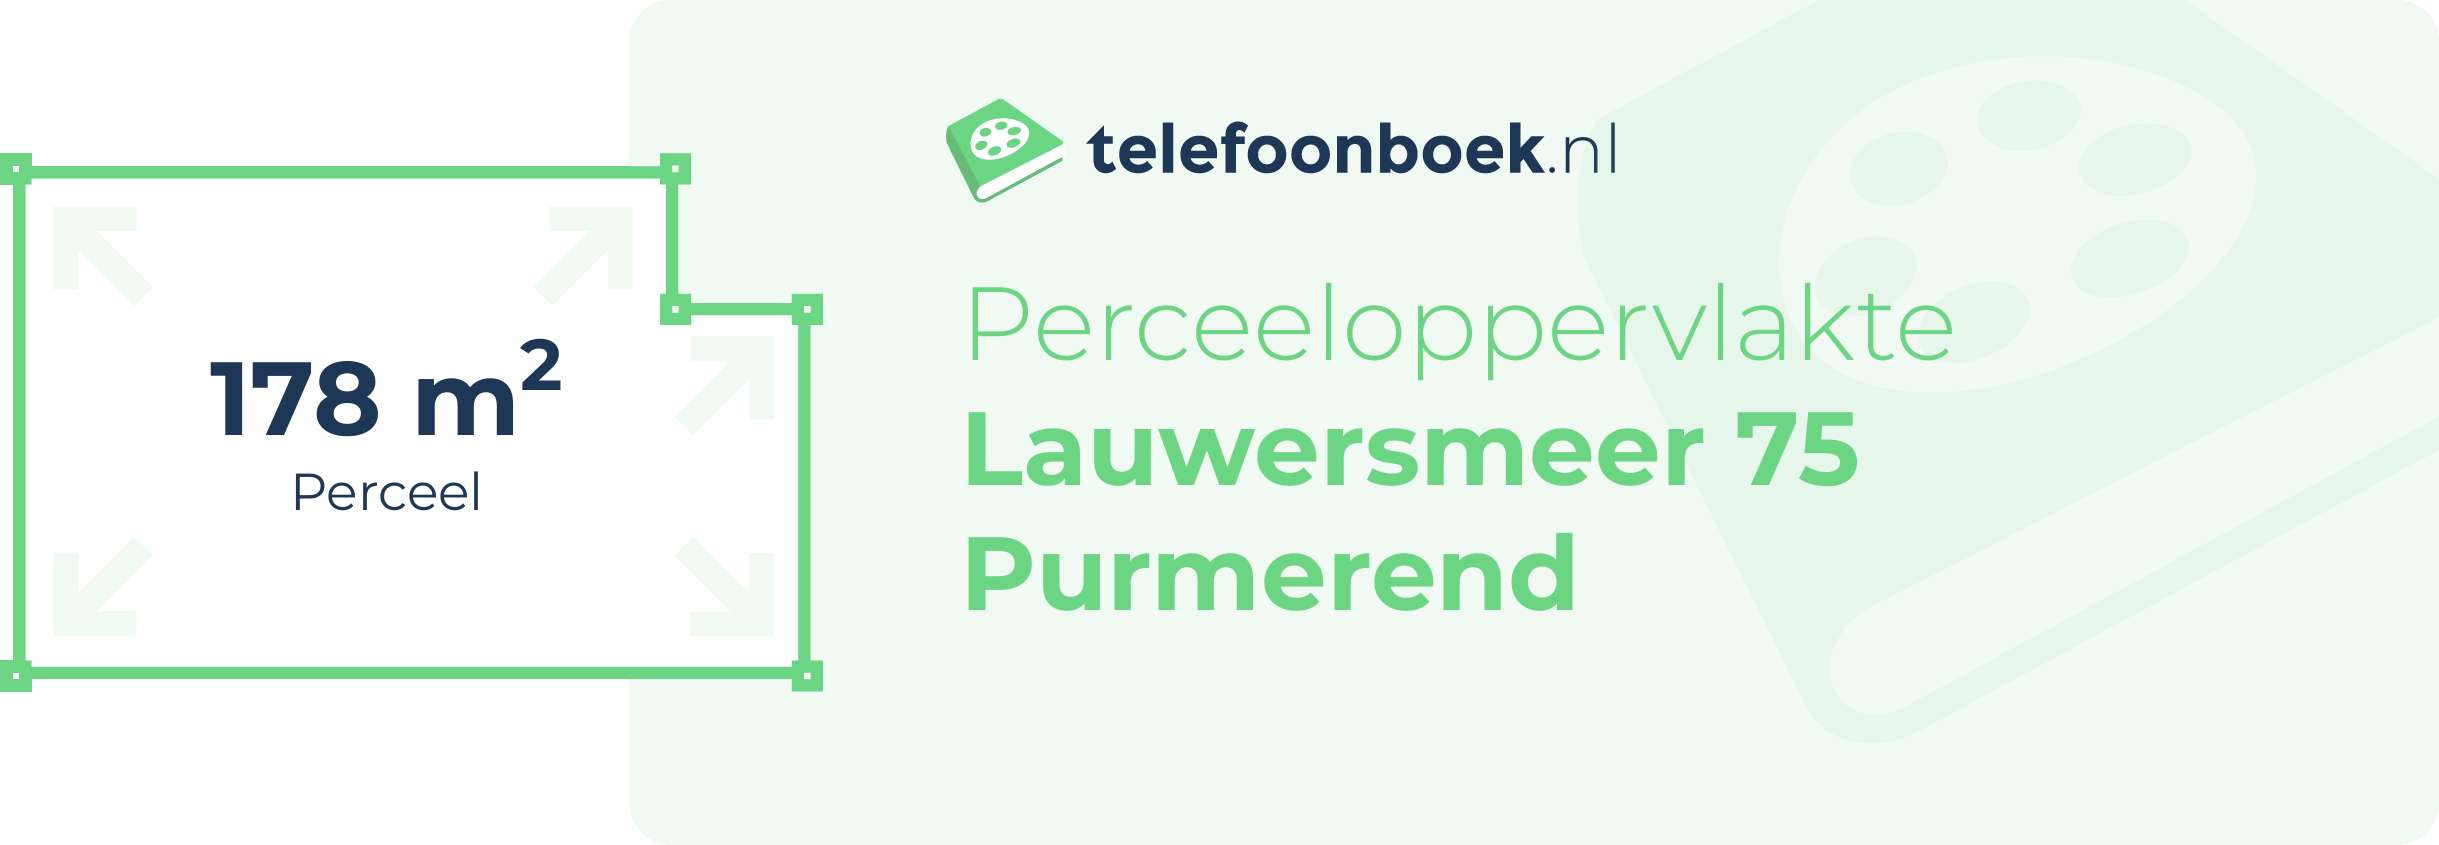 Perceeloppervlakte Lauwersmeer 75 Purmerend